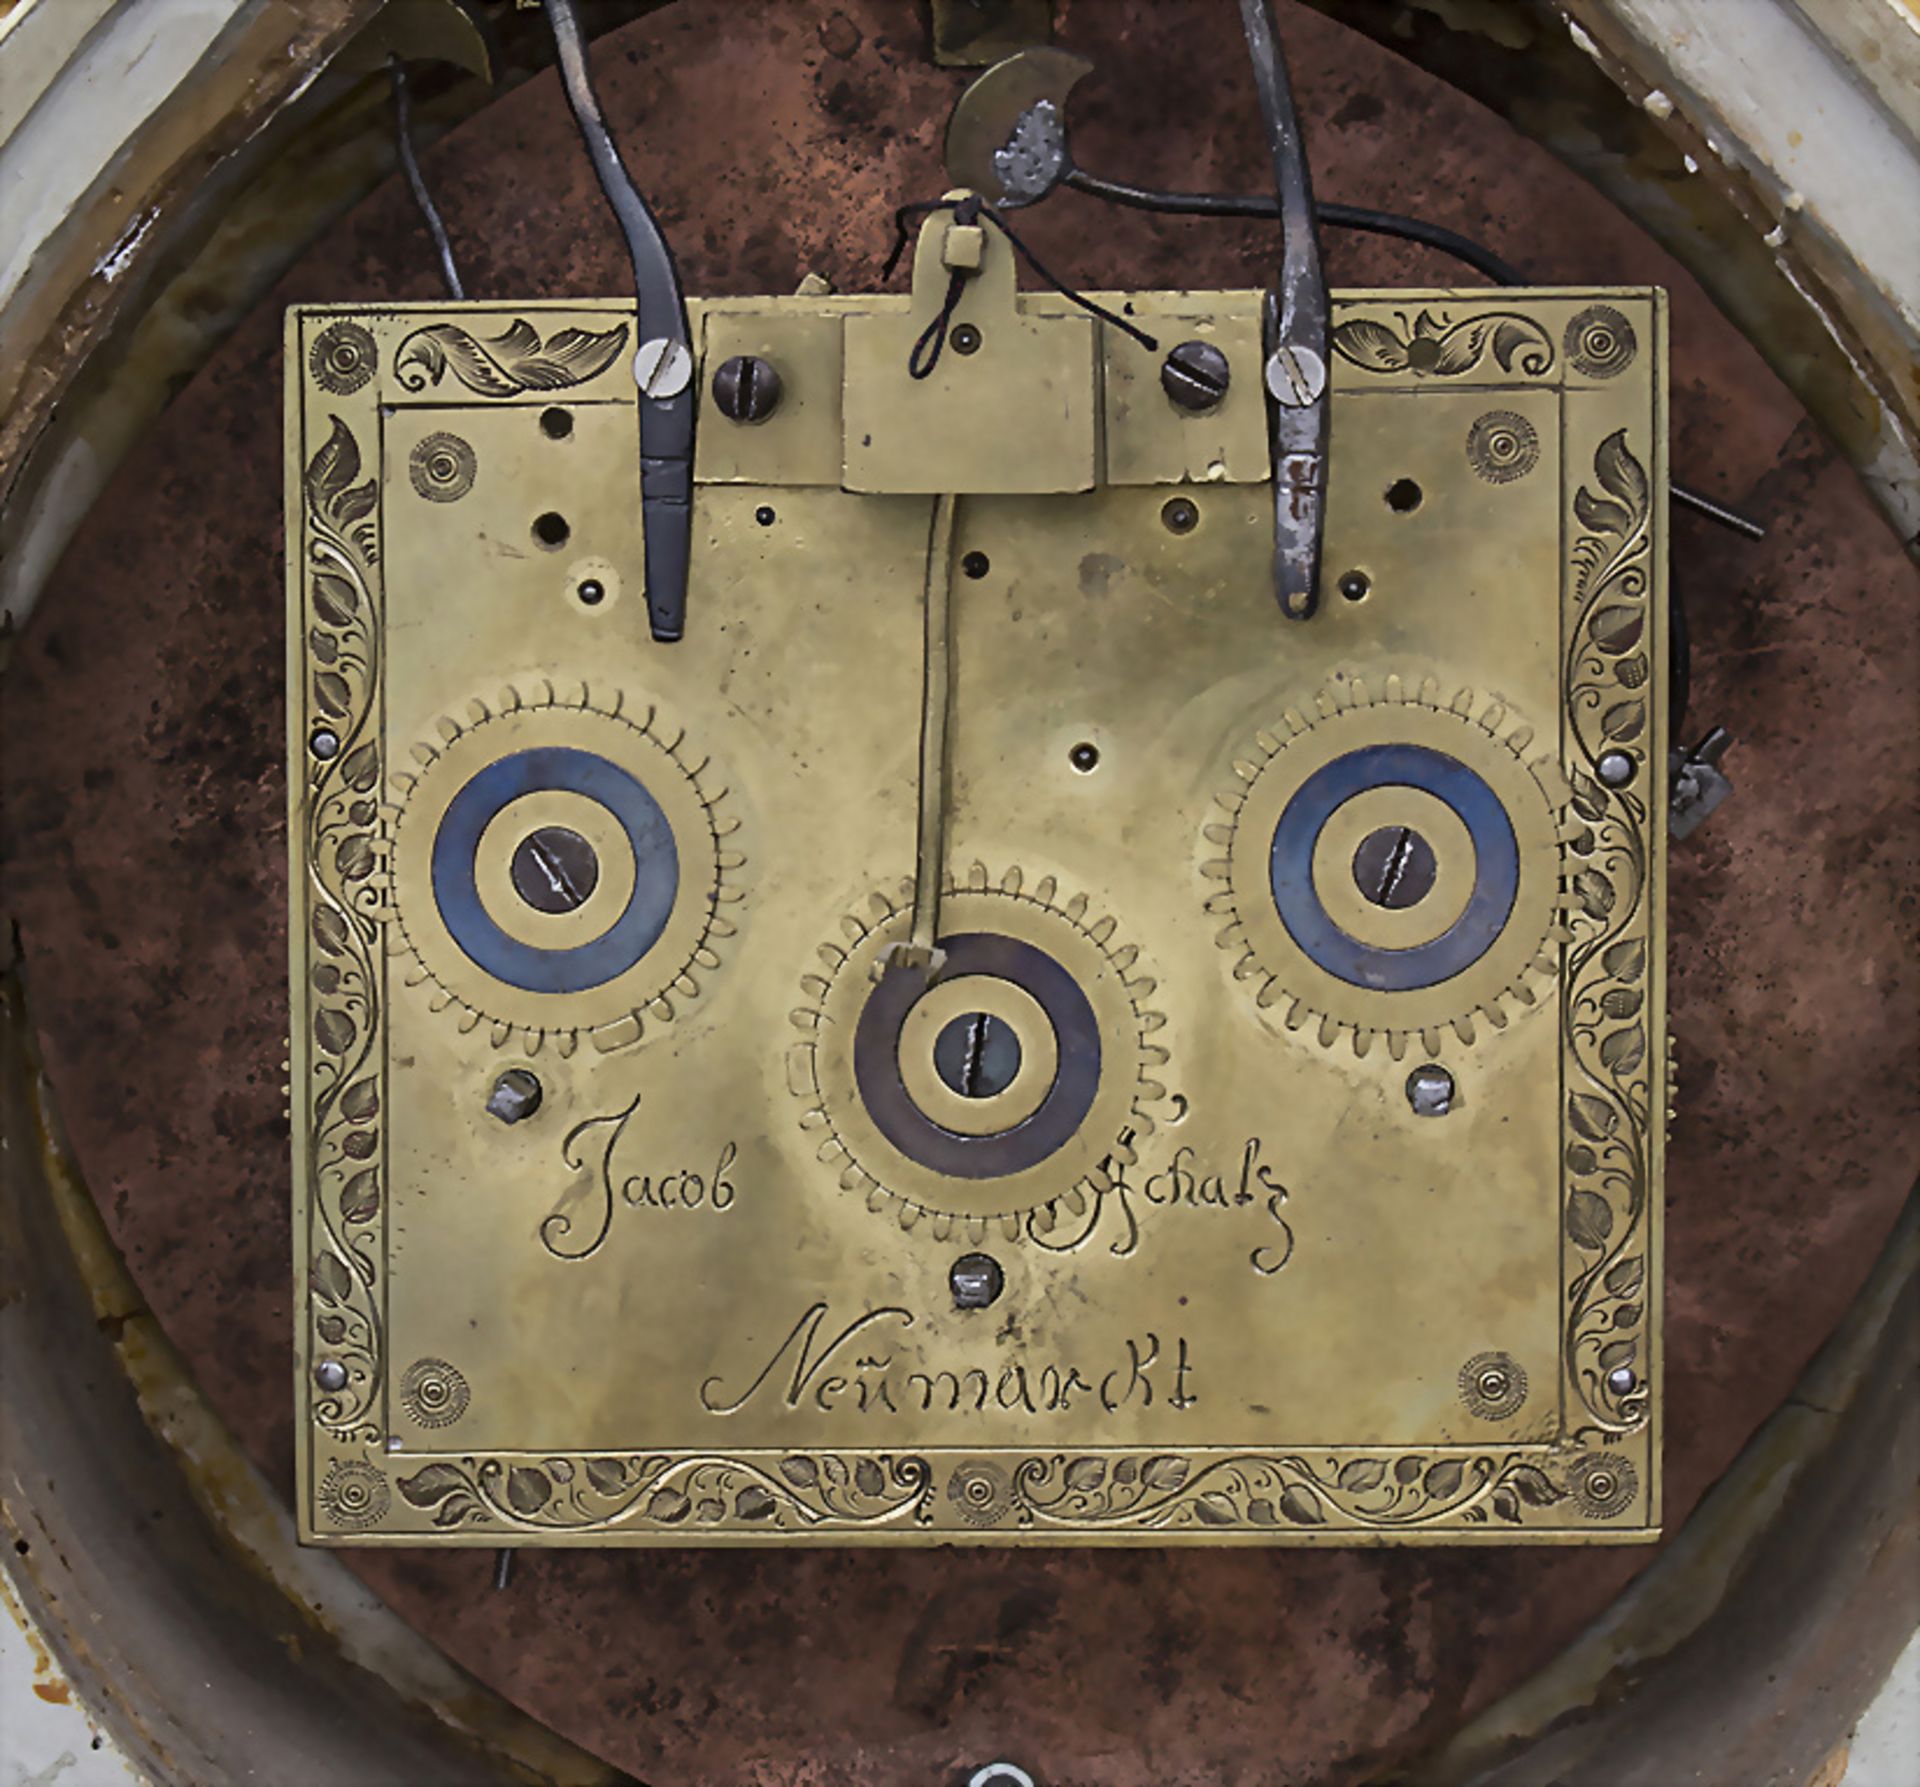 Louis-Seize-Kaminuhr / Louis-Seize mantle Clock, Jocob Scholz, Neumarkt, um 1775 - Bild 4 aus 4